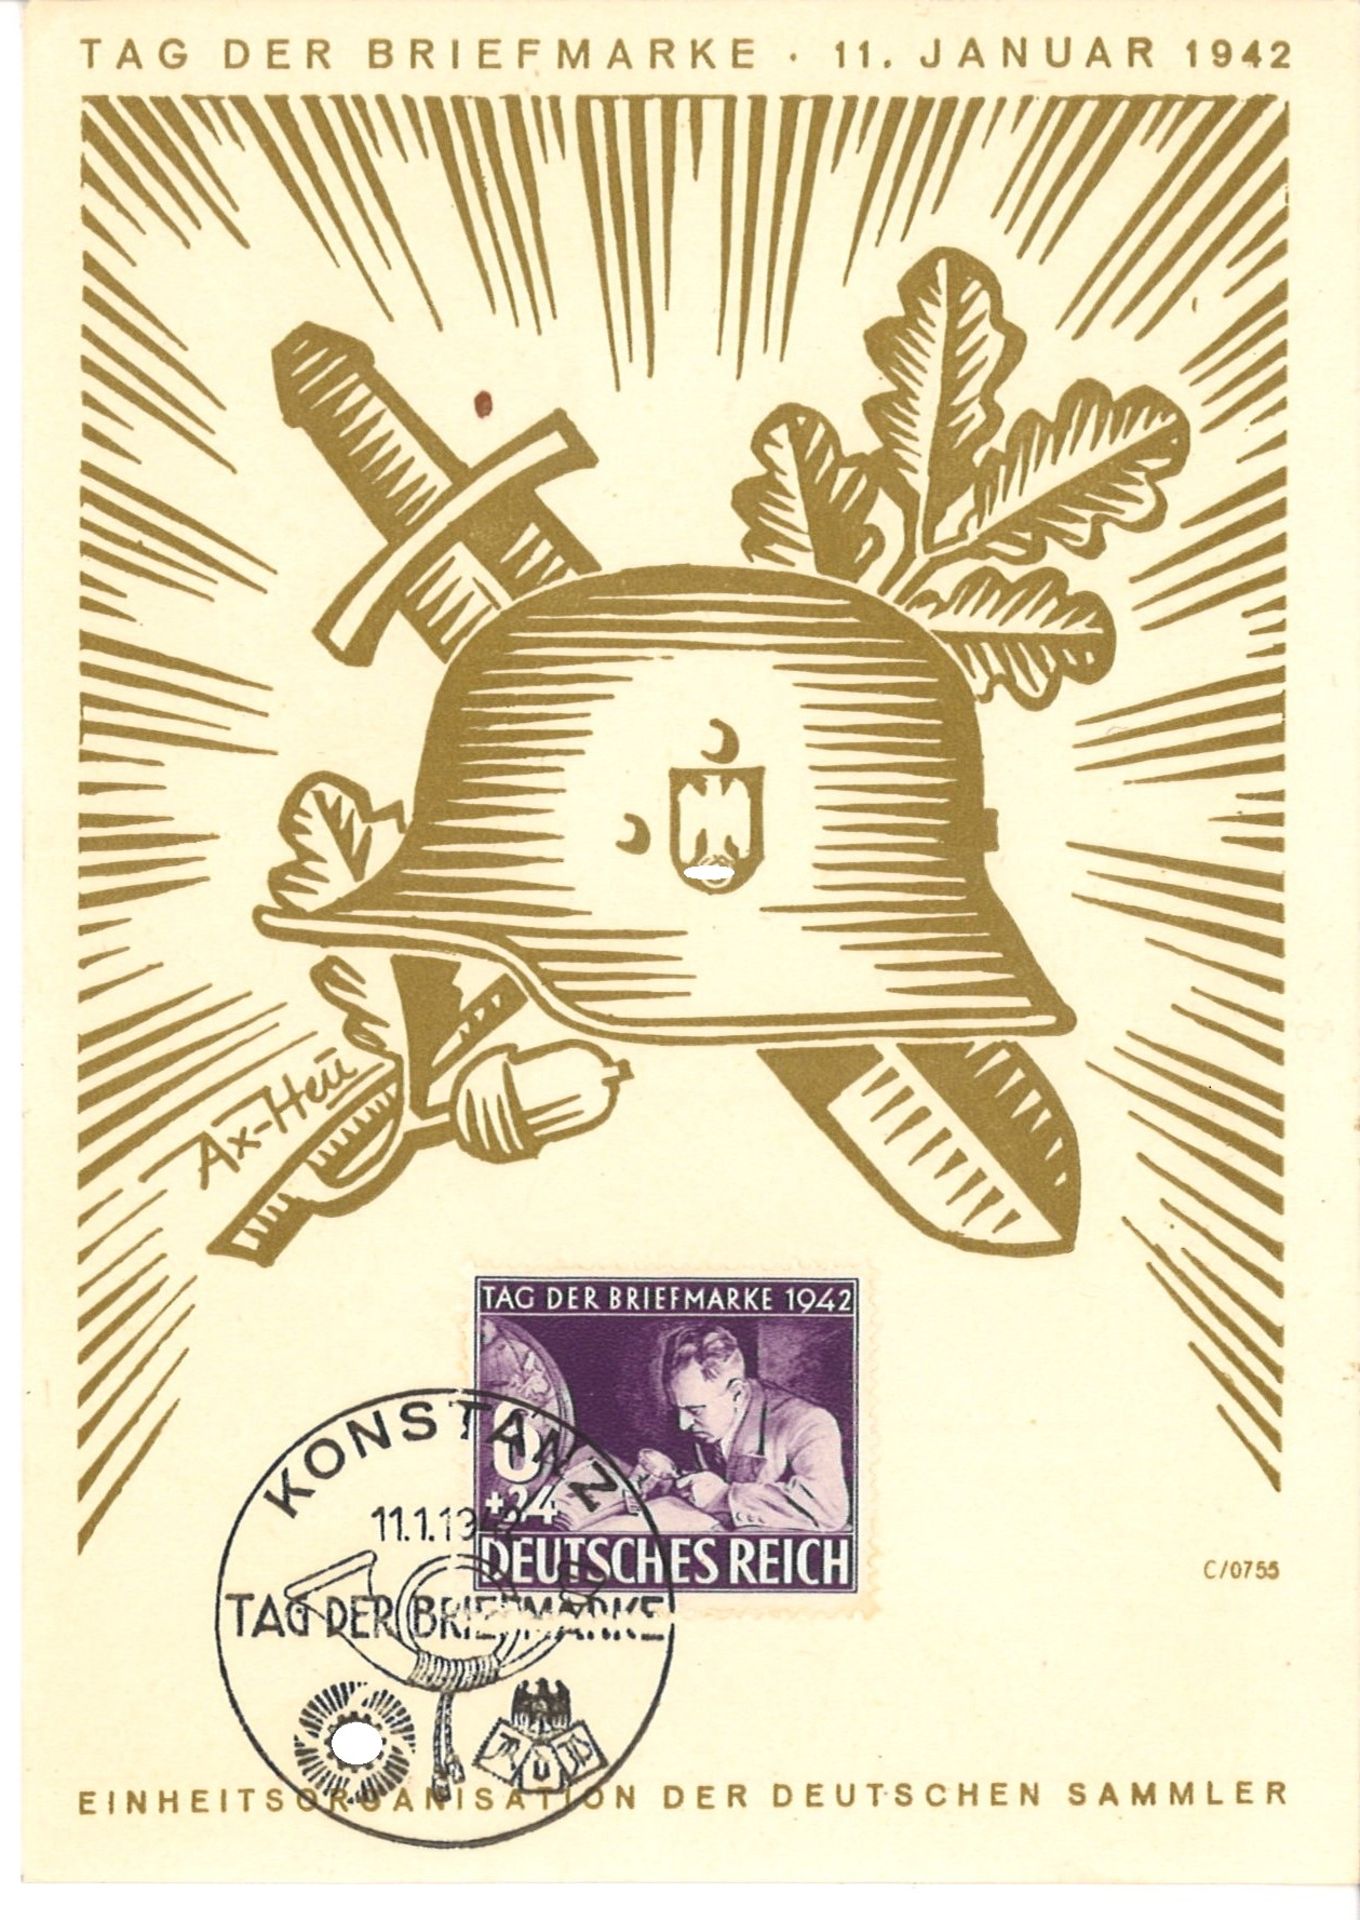 Propaganda, "Sondermarke zum Tag der Briefmarke" 11. Januar 1942 Konstanz.